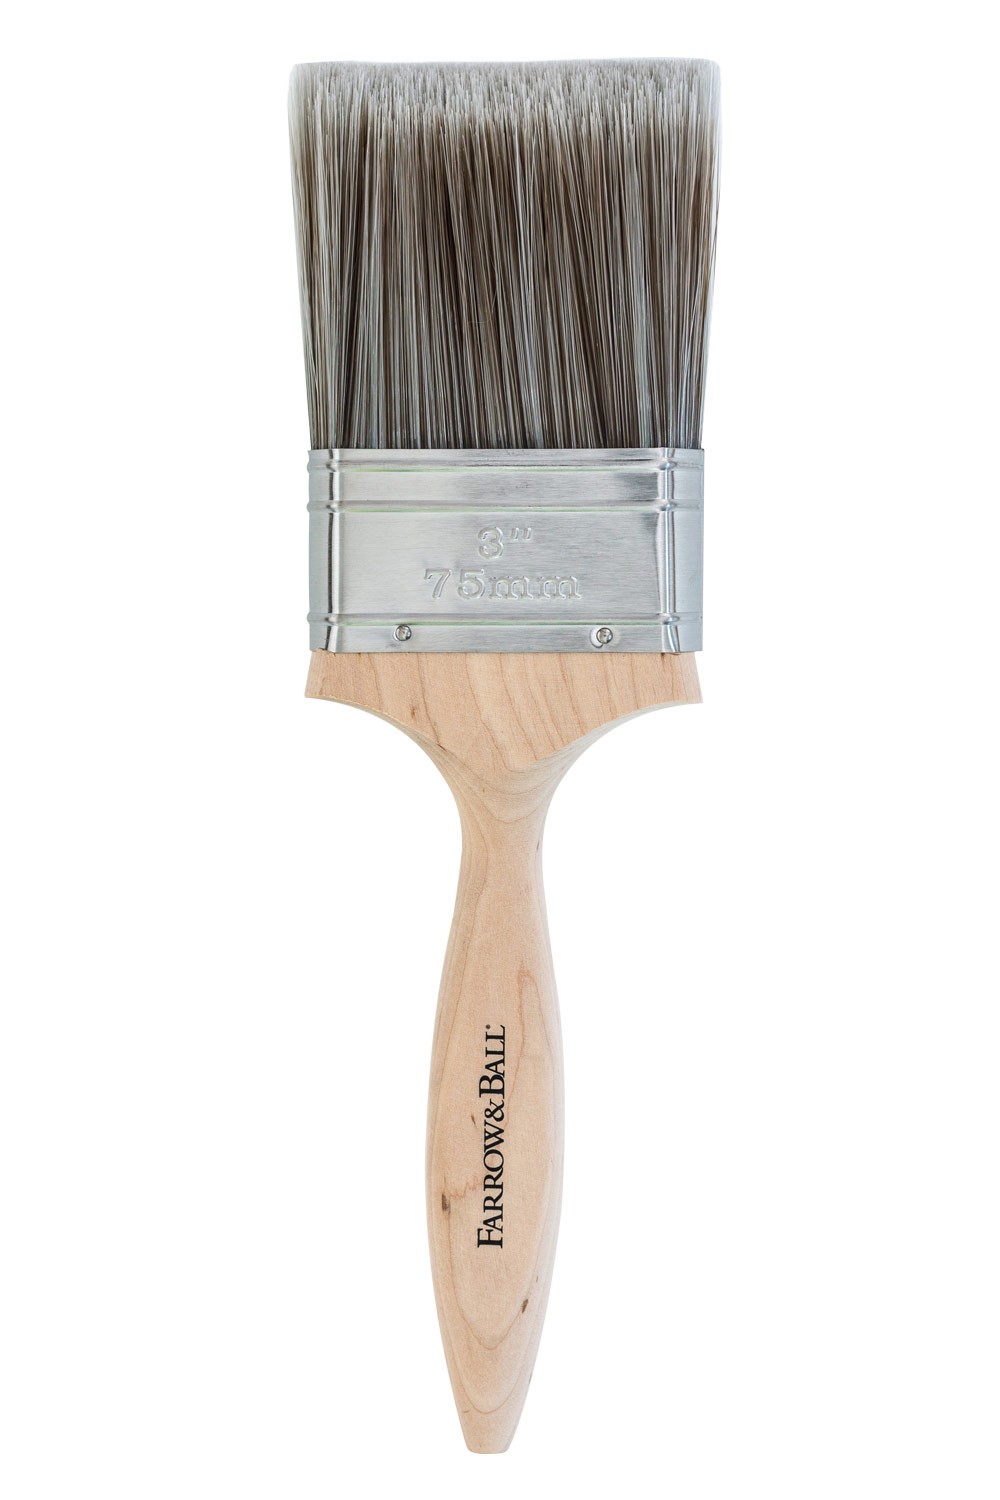 3-inch-paint-brush